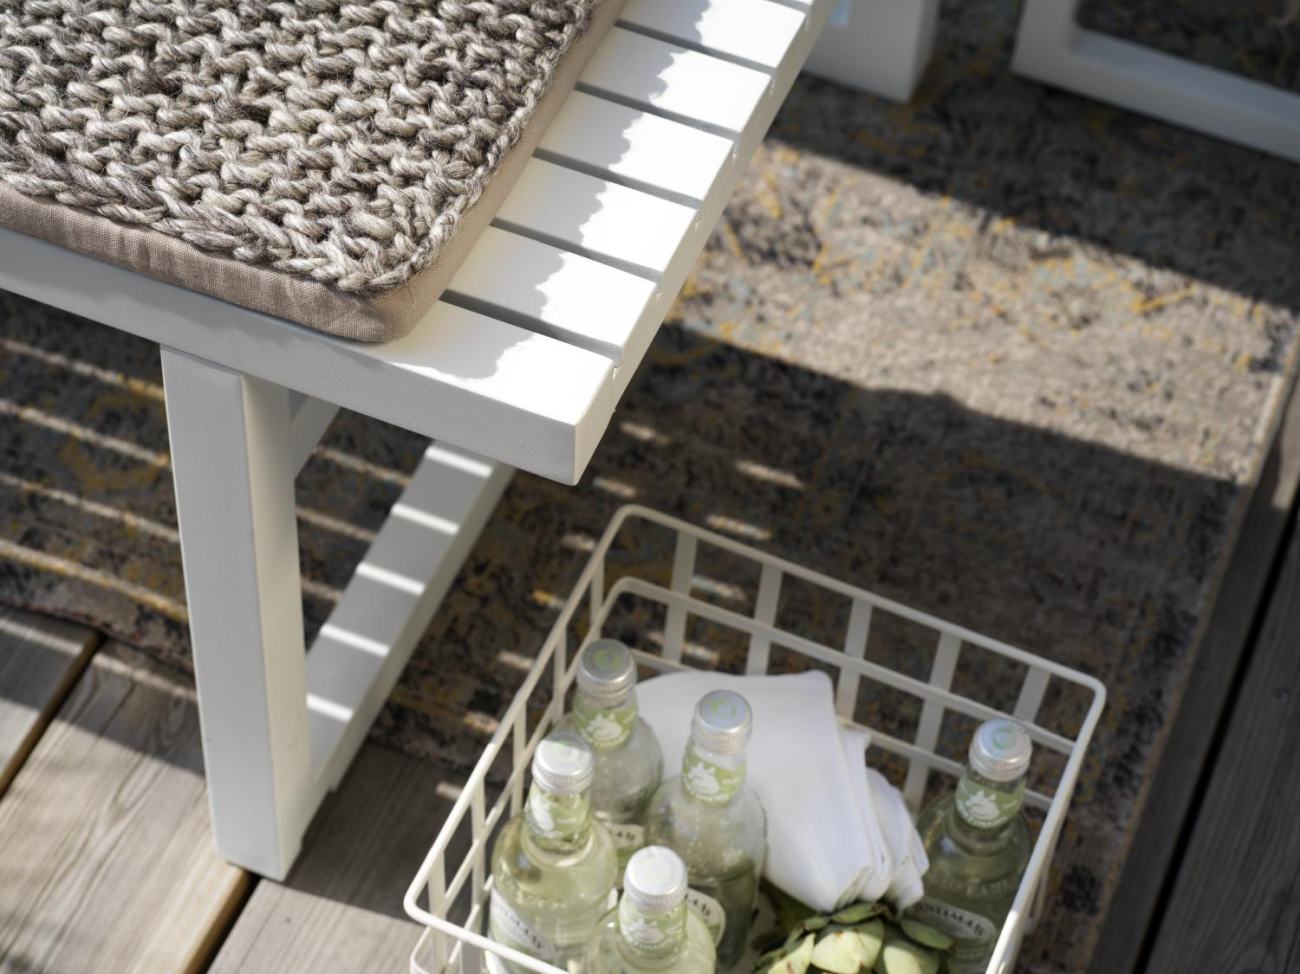 Der Gartenesstisch Vevi überzeugt mit seinem modernen Design. Gefertigt wurde die Tischplatte aus Metall, welche einen weißen Farbton besitzt. Das Gestell ist auch aus Metall und hat eine weiße Farbe. Der Tisch besitzt eine Länge von 160 cm.